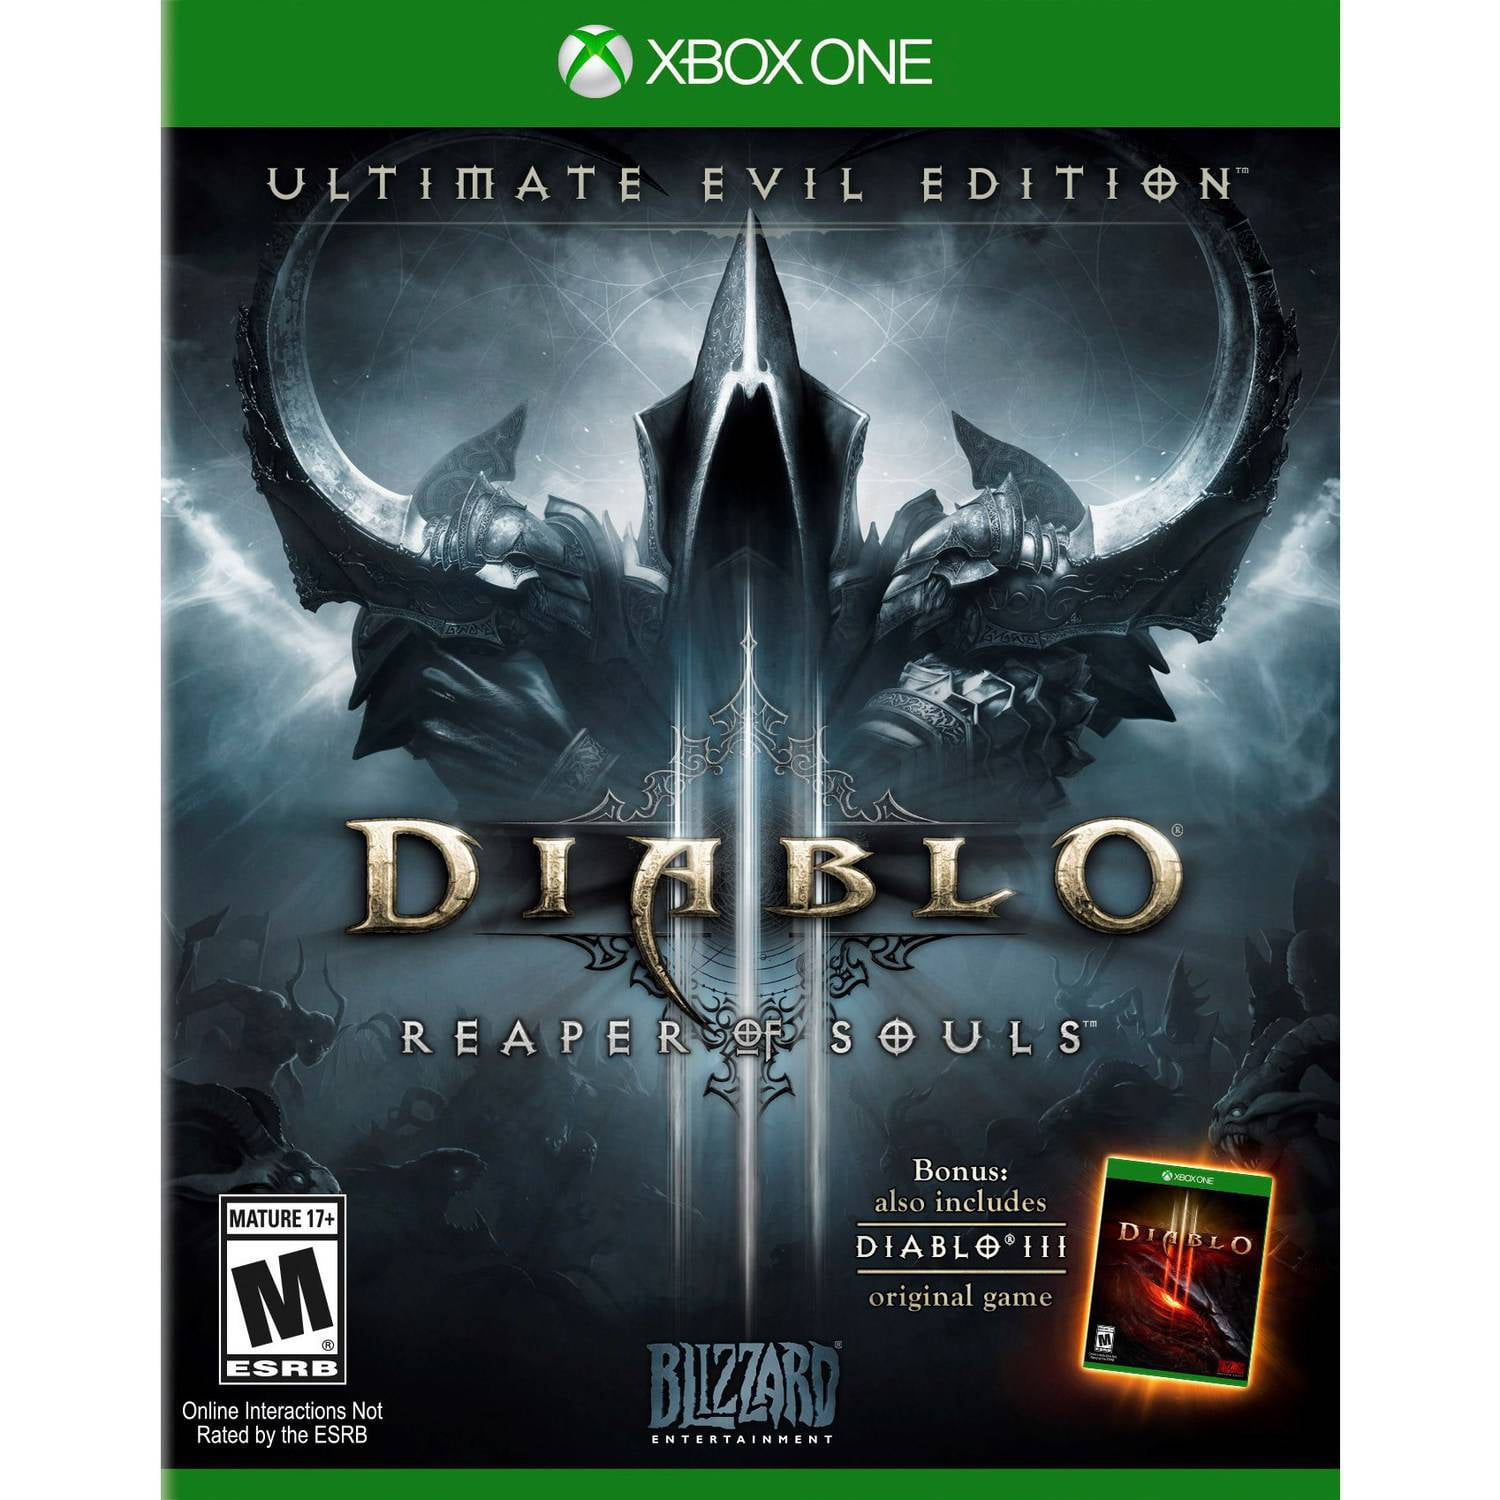 Diablo xbox купить. Diablo III: Reaper of Souls. Ultimate Evil Edition Xbox 360. Diablo 3 Reaper of Souls Ultimate Evil ps3. Diablo III: Reaper of Souls ps4. Diablo 3 Edition ps3 Reaper of Souls.